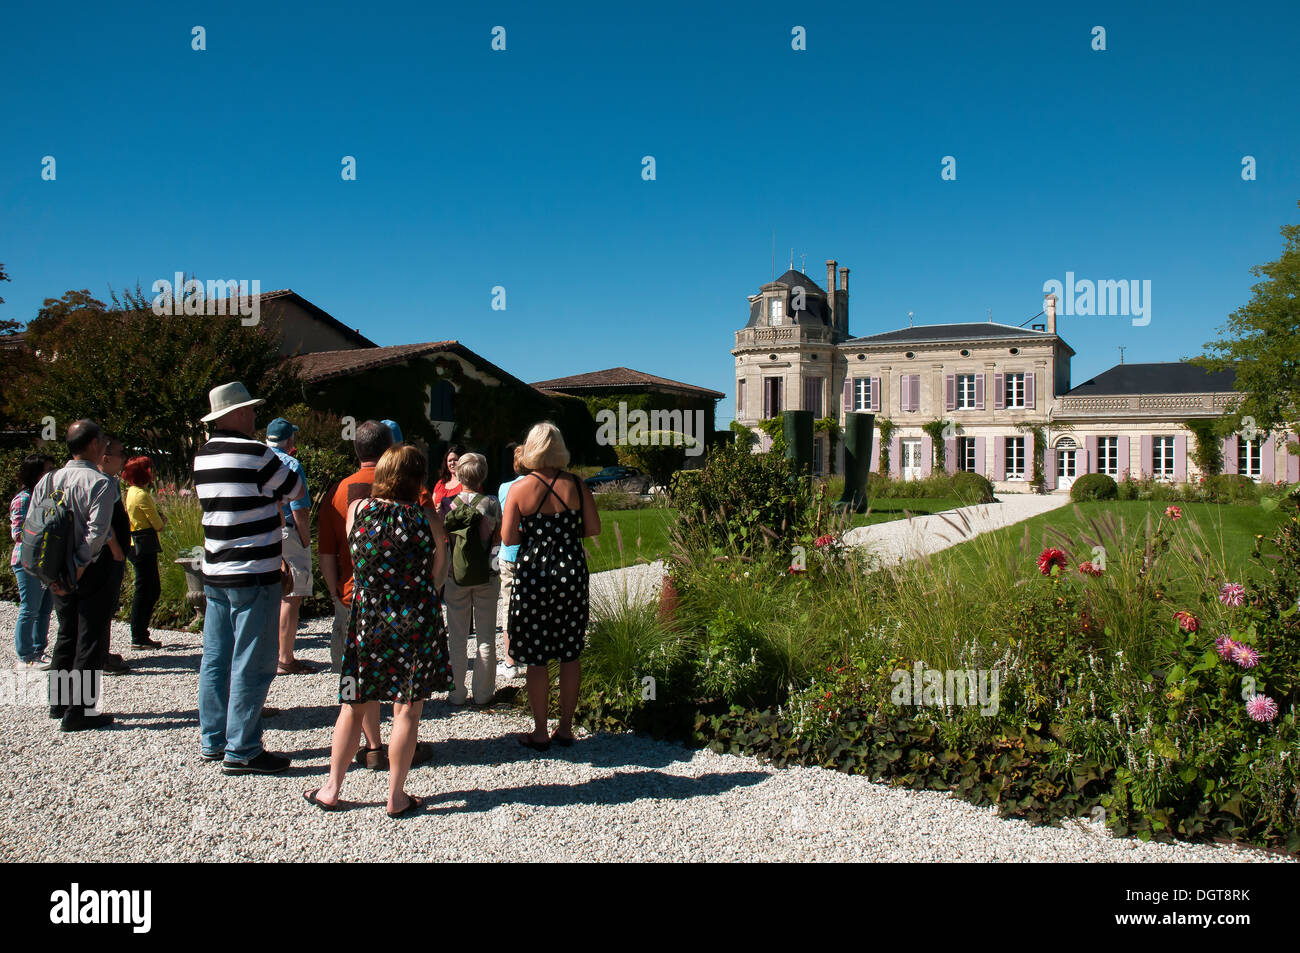 Frankreich, in der Nähe von Bordeaux. Touristen besuchen das Chateau Gruaud-Larose im Großraum St. Julien des Medoc, berühmt für Rotweine. Stockfoto